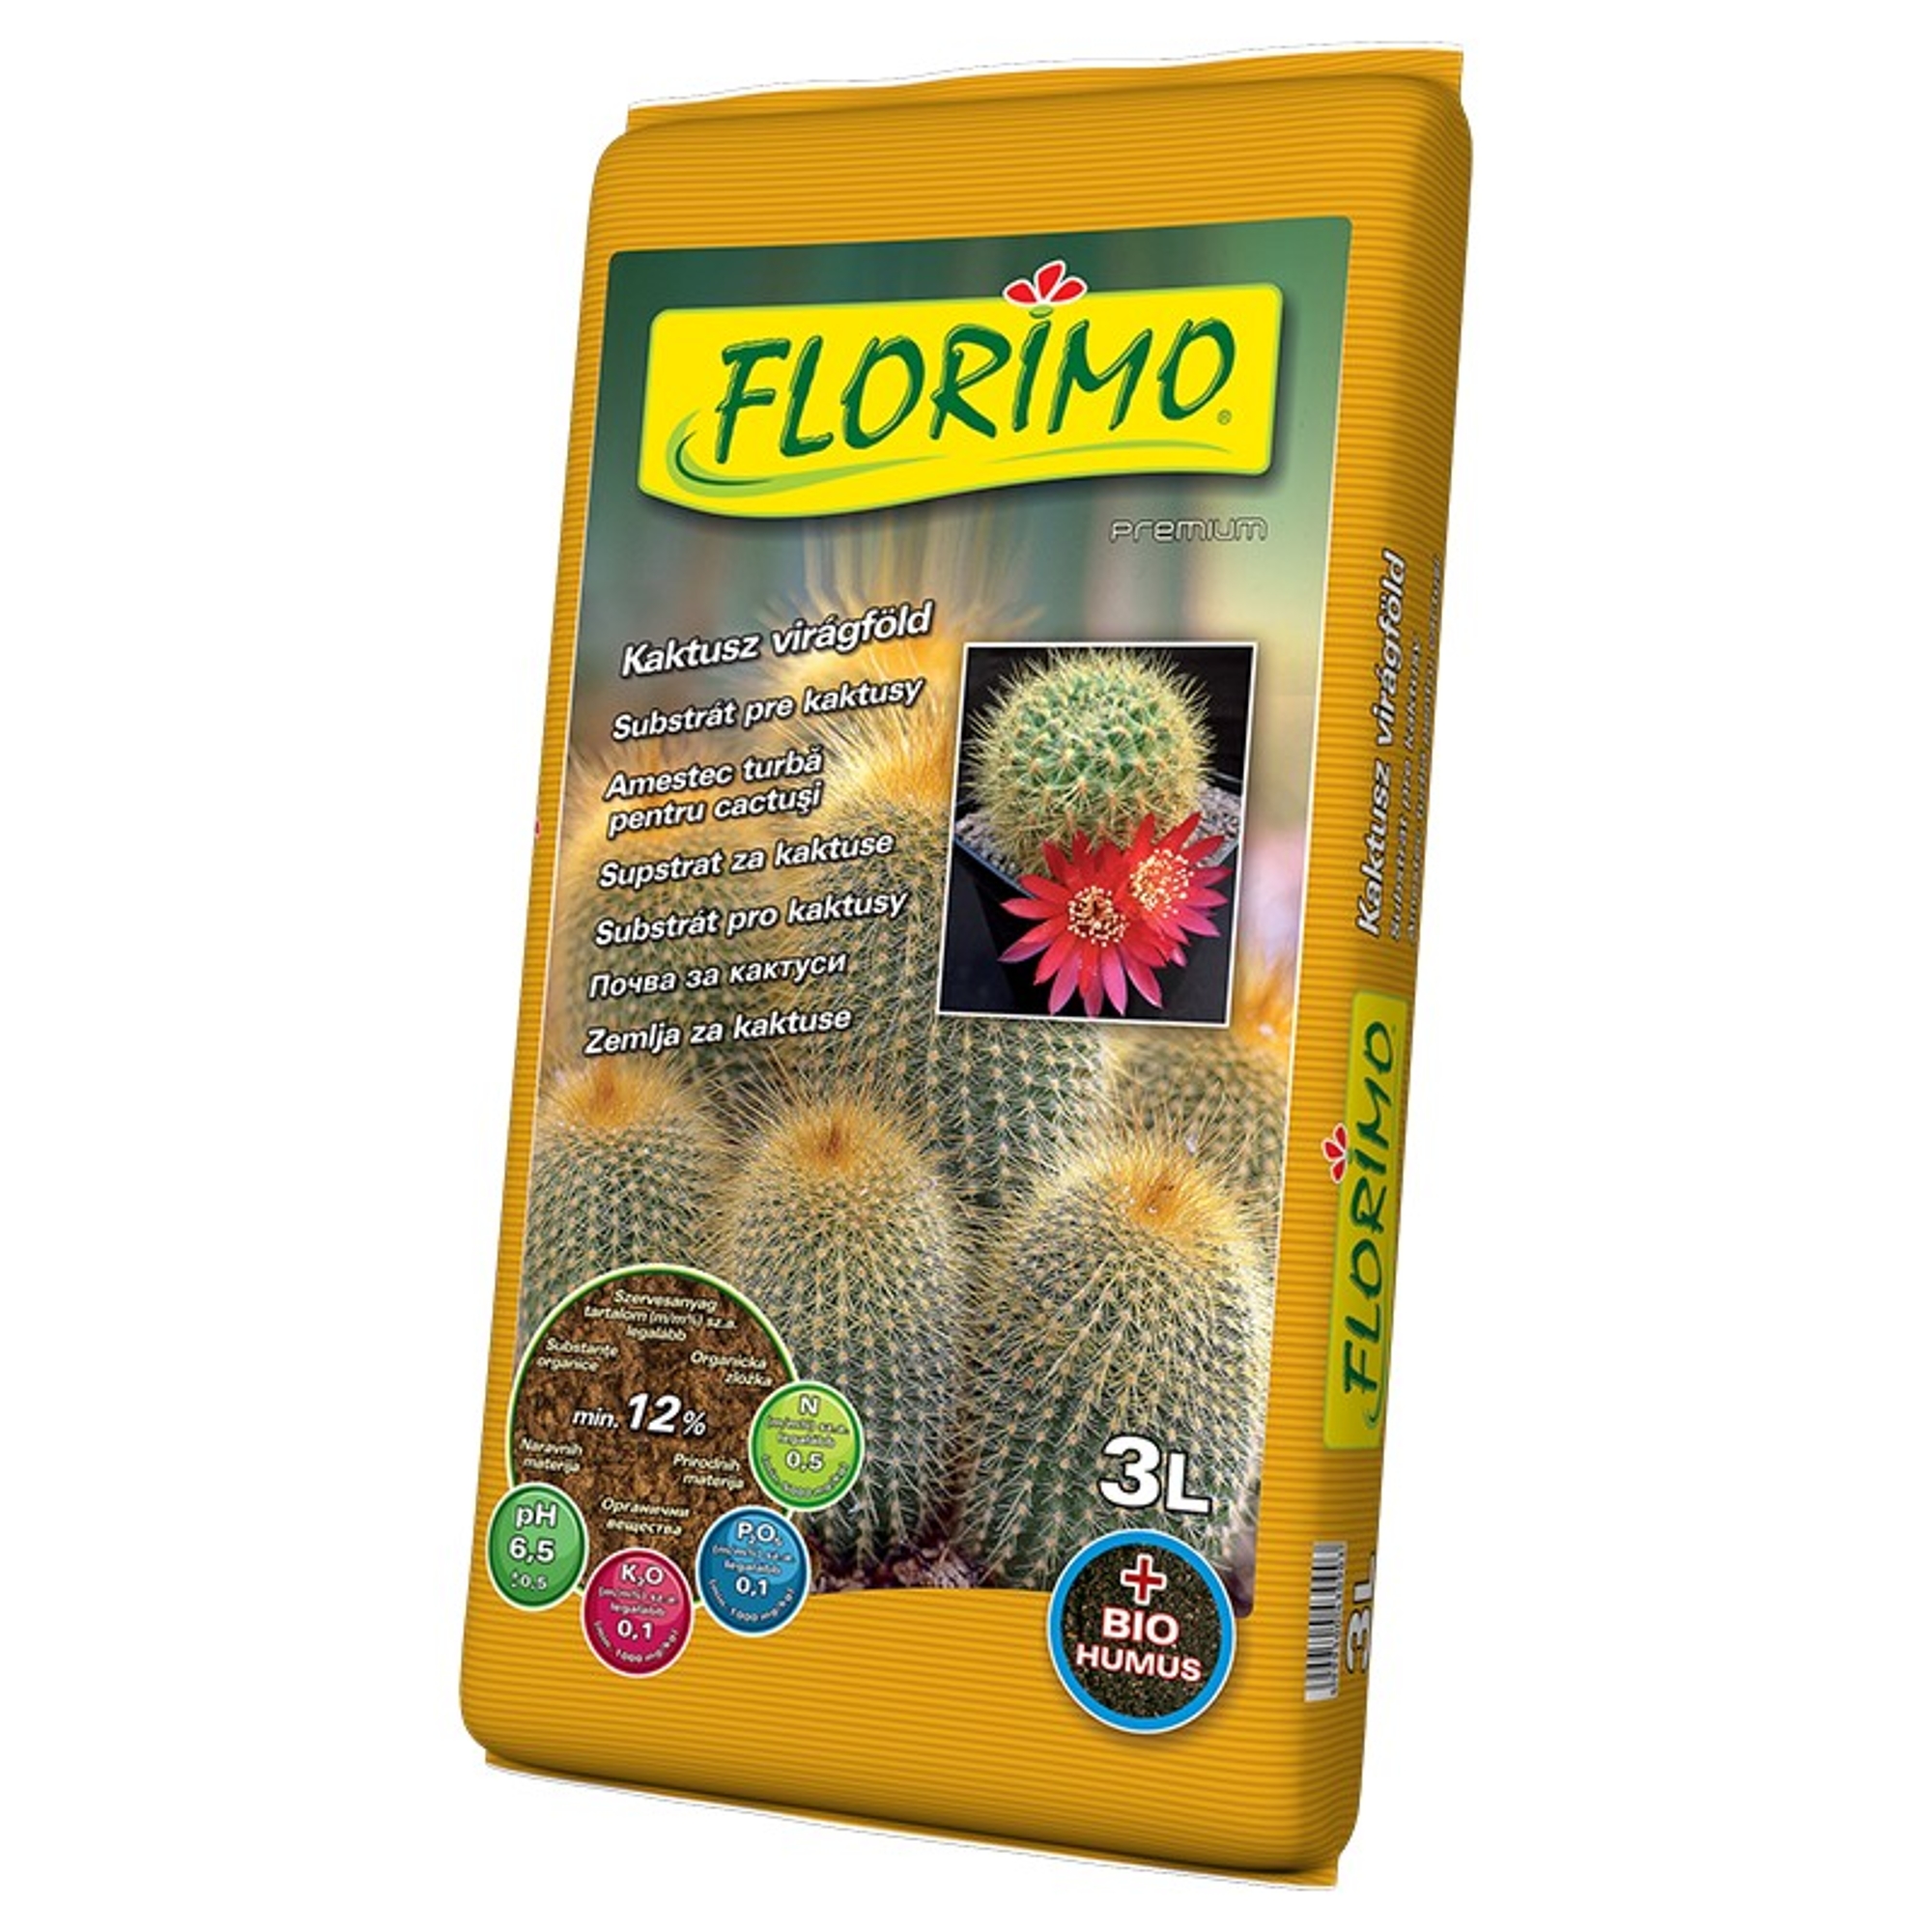 Florimo kaktusz virágföld 3 l